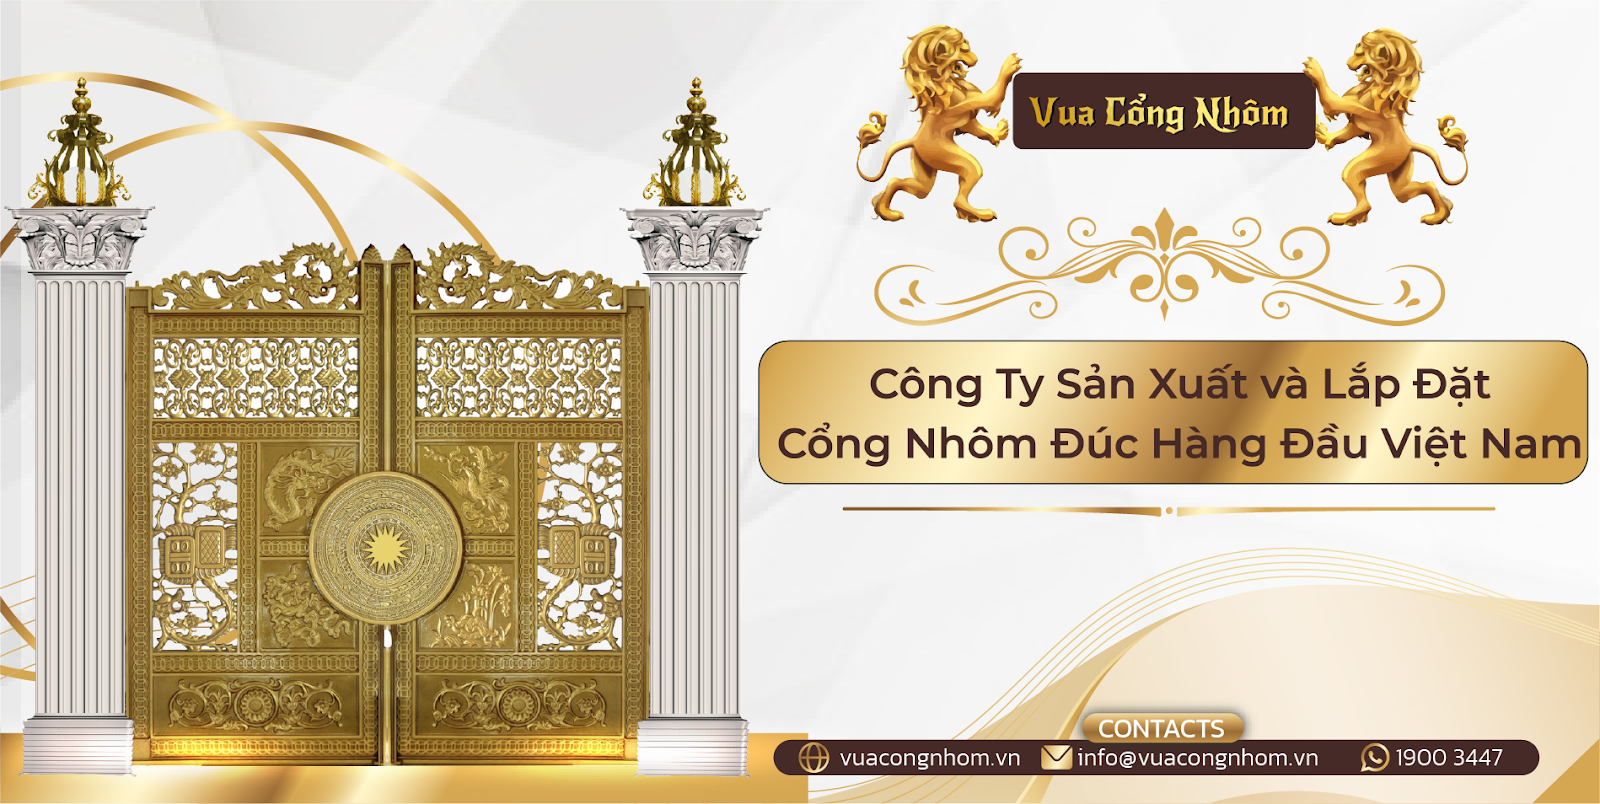 Vua Cổng Nhôm - công ty sản xuất và lắp đặt cổng nhôm đúc lớn nhất Việt Nam